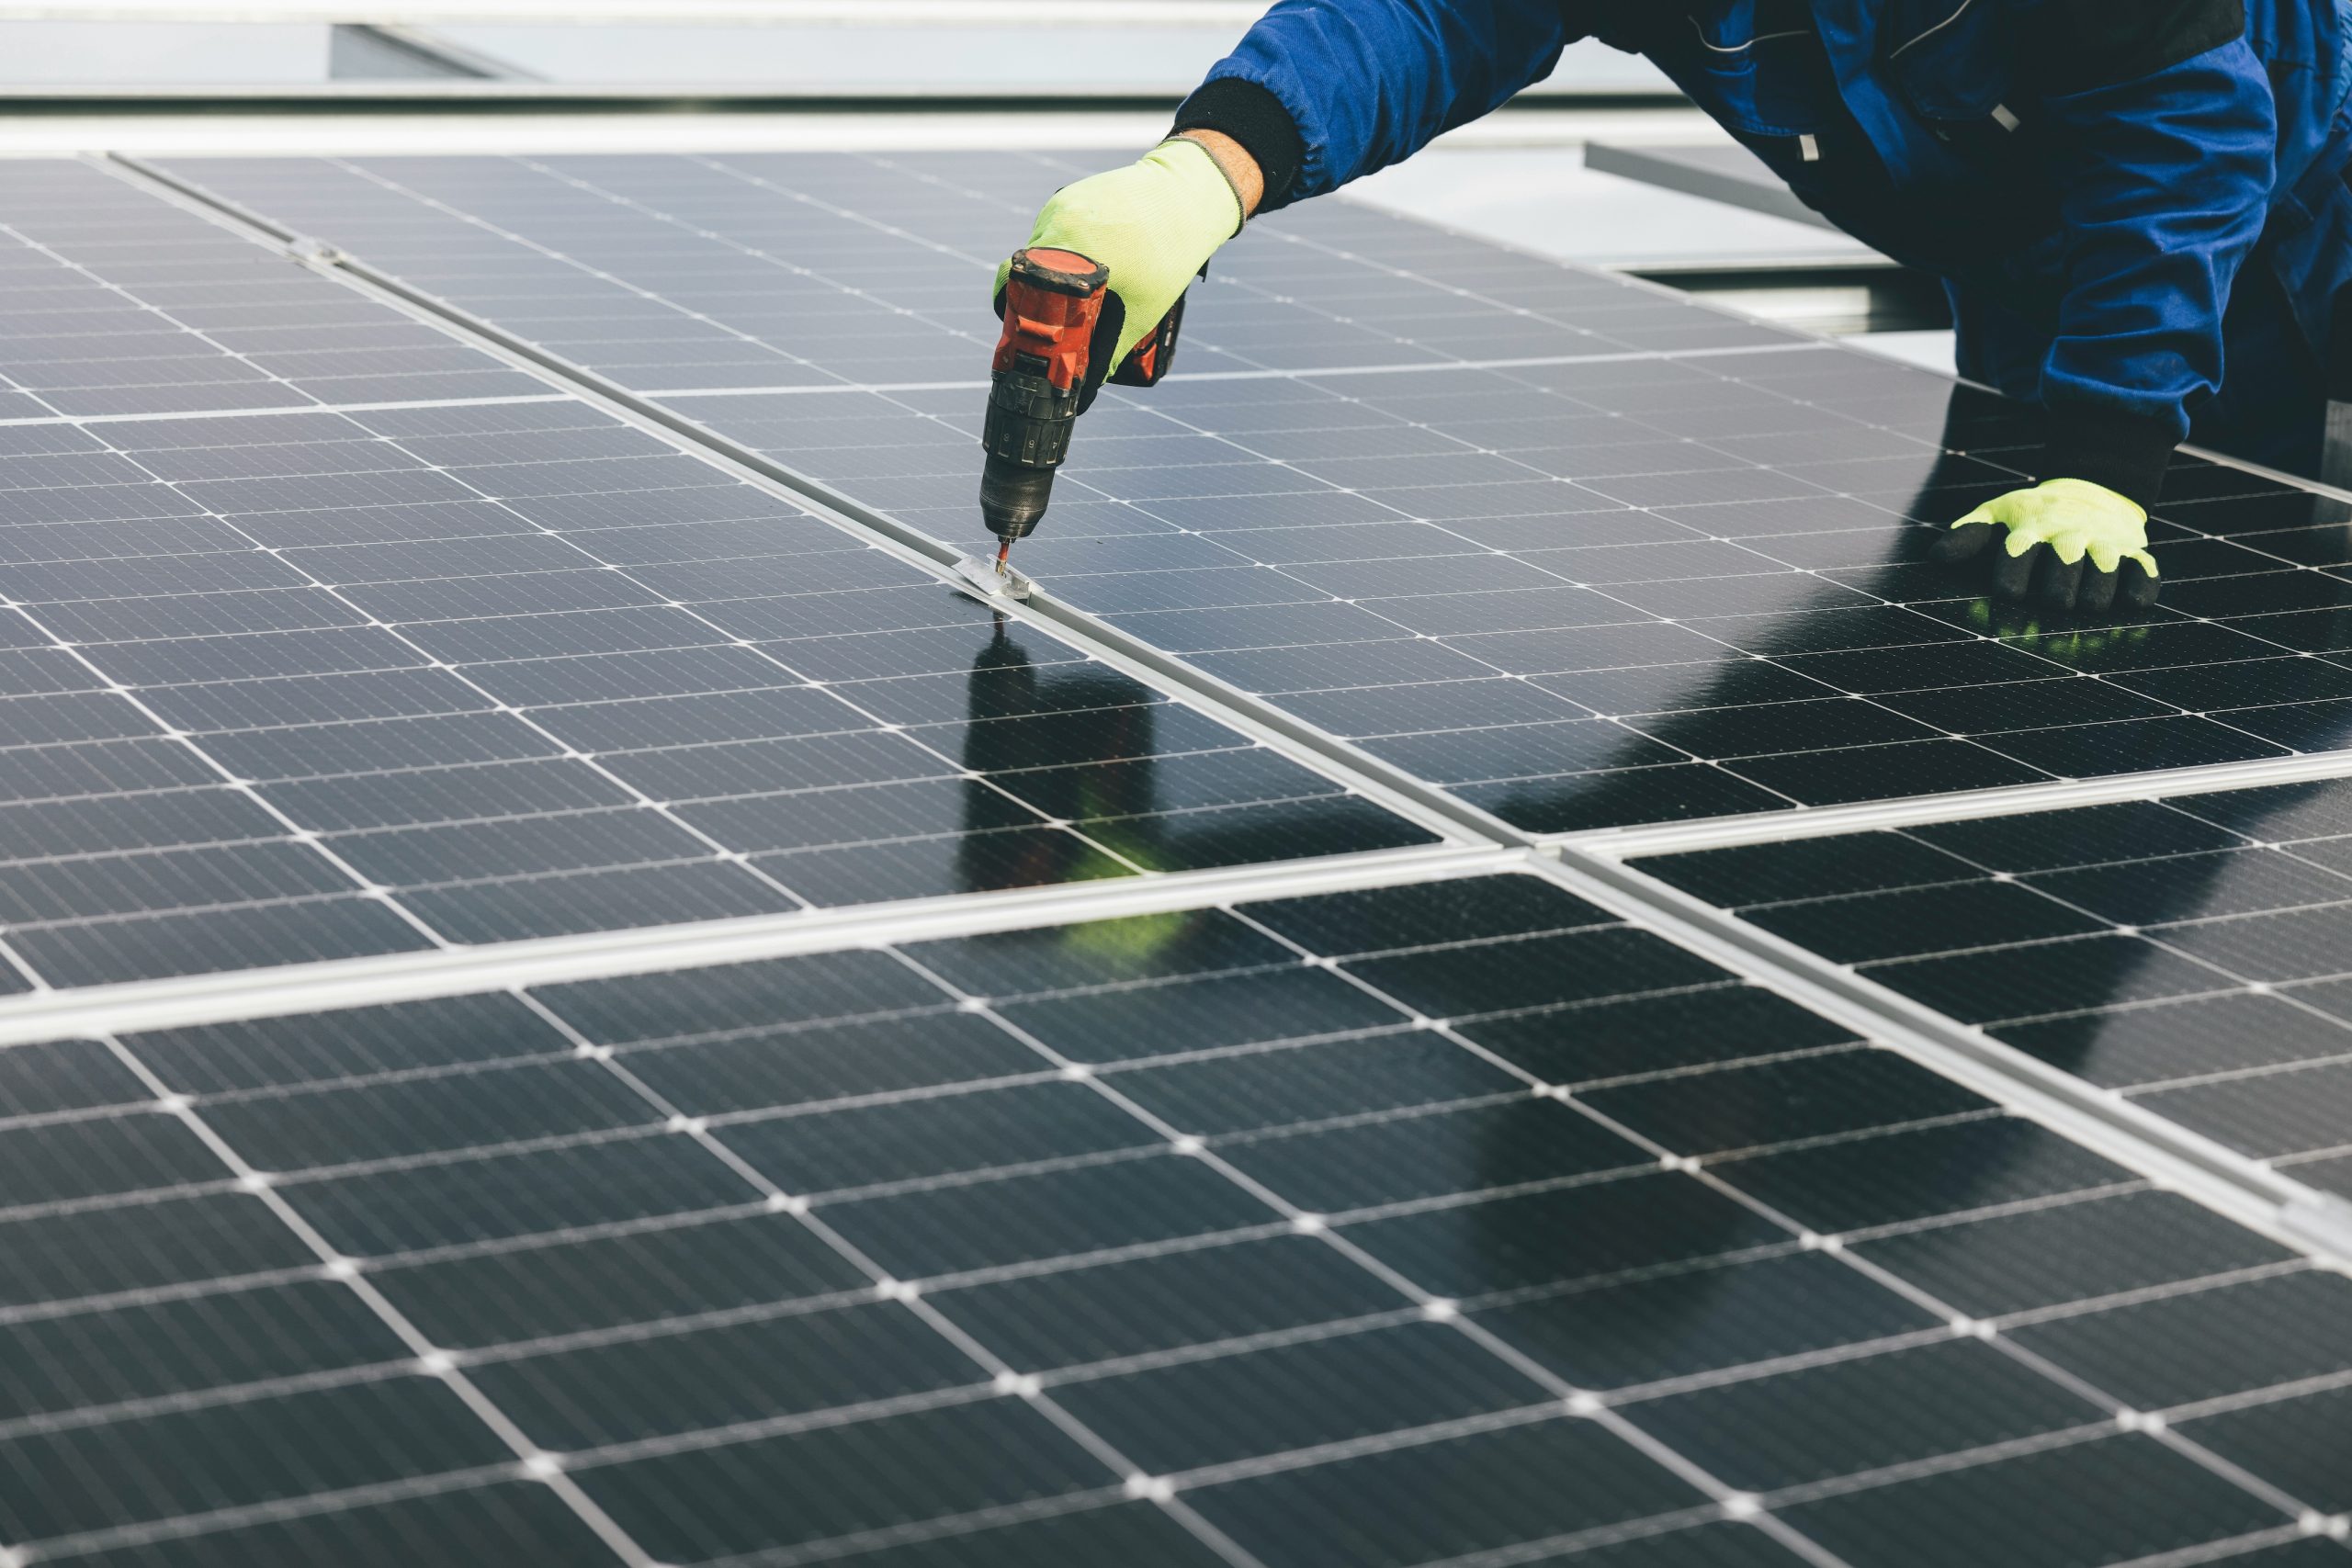 Placas solares flexibles – Energía Renovable – Solar, Eólica e Hidráulica